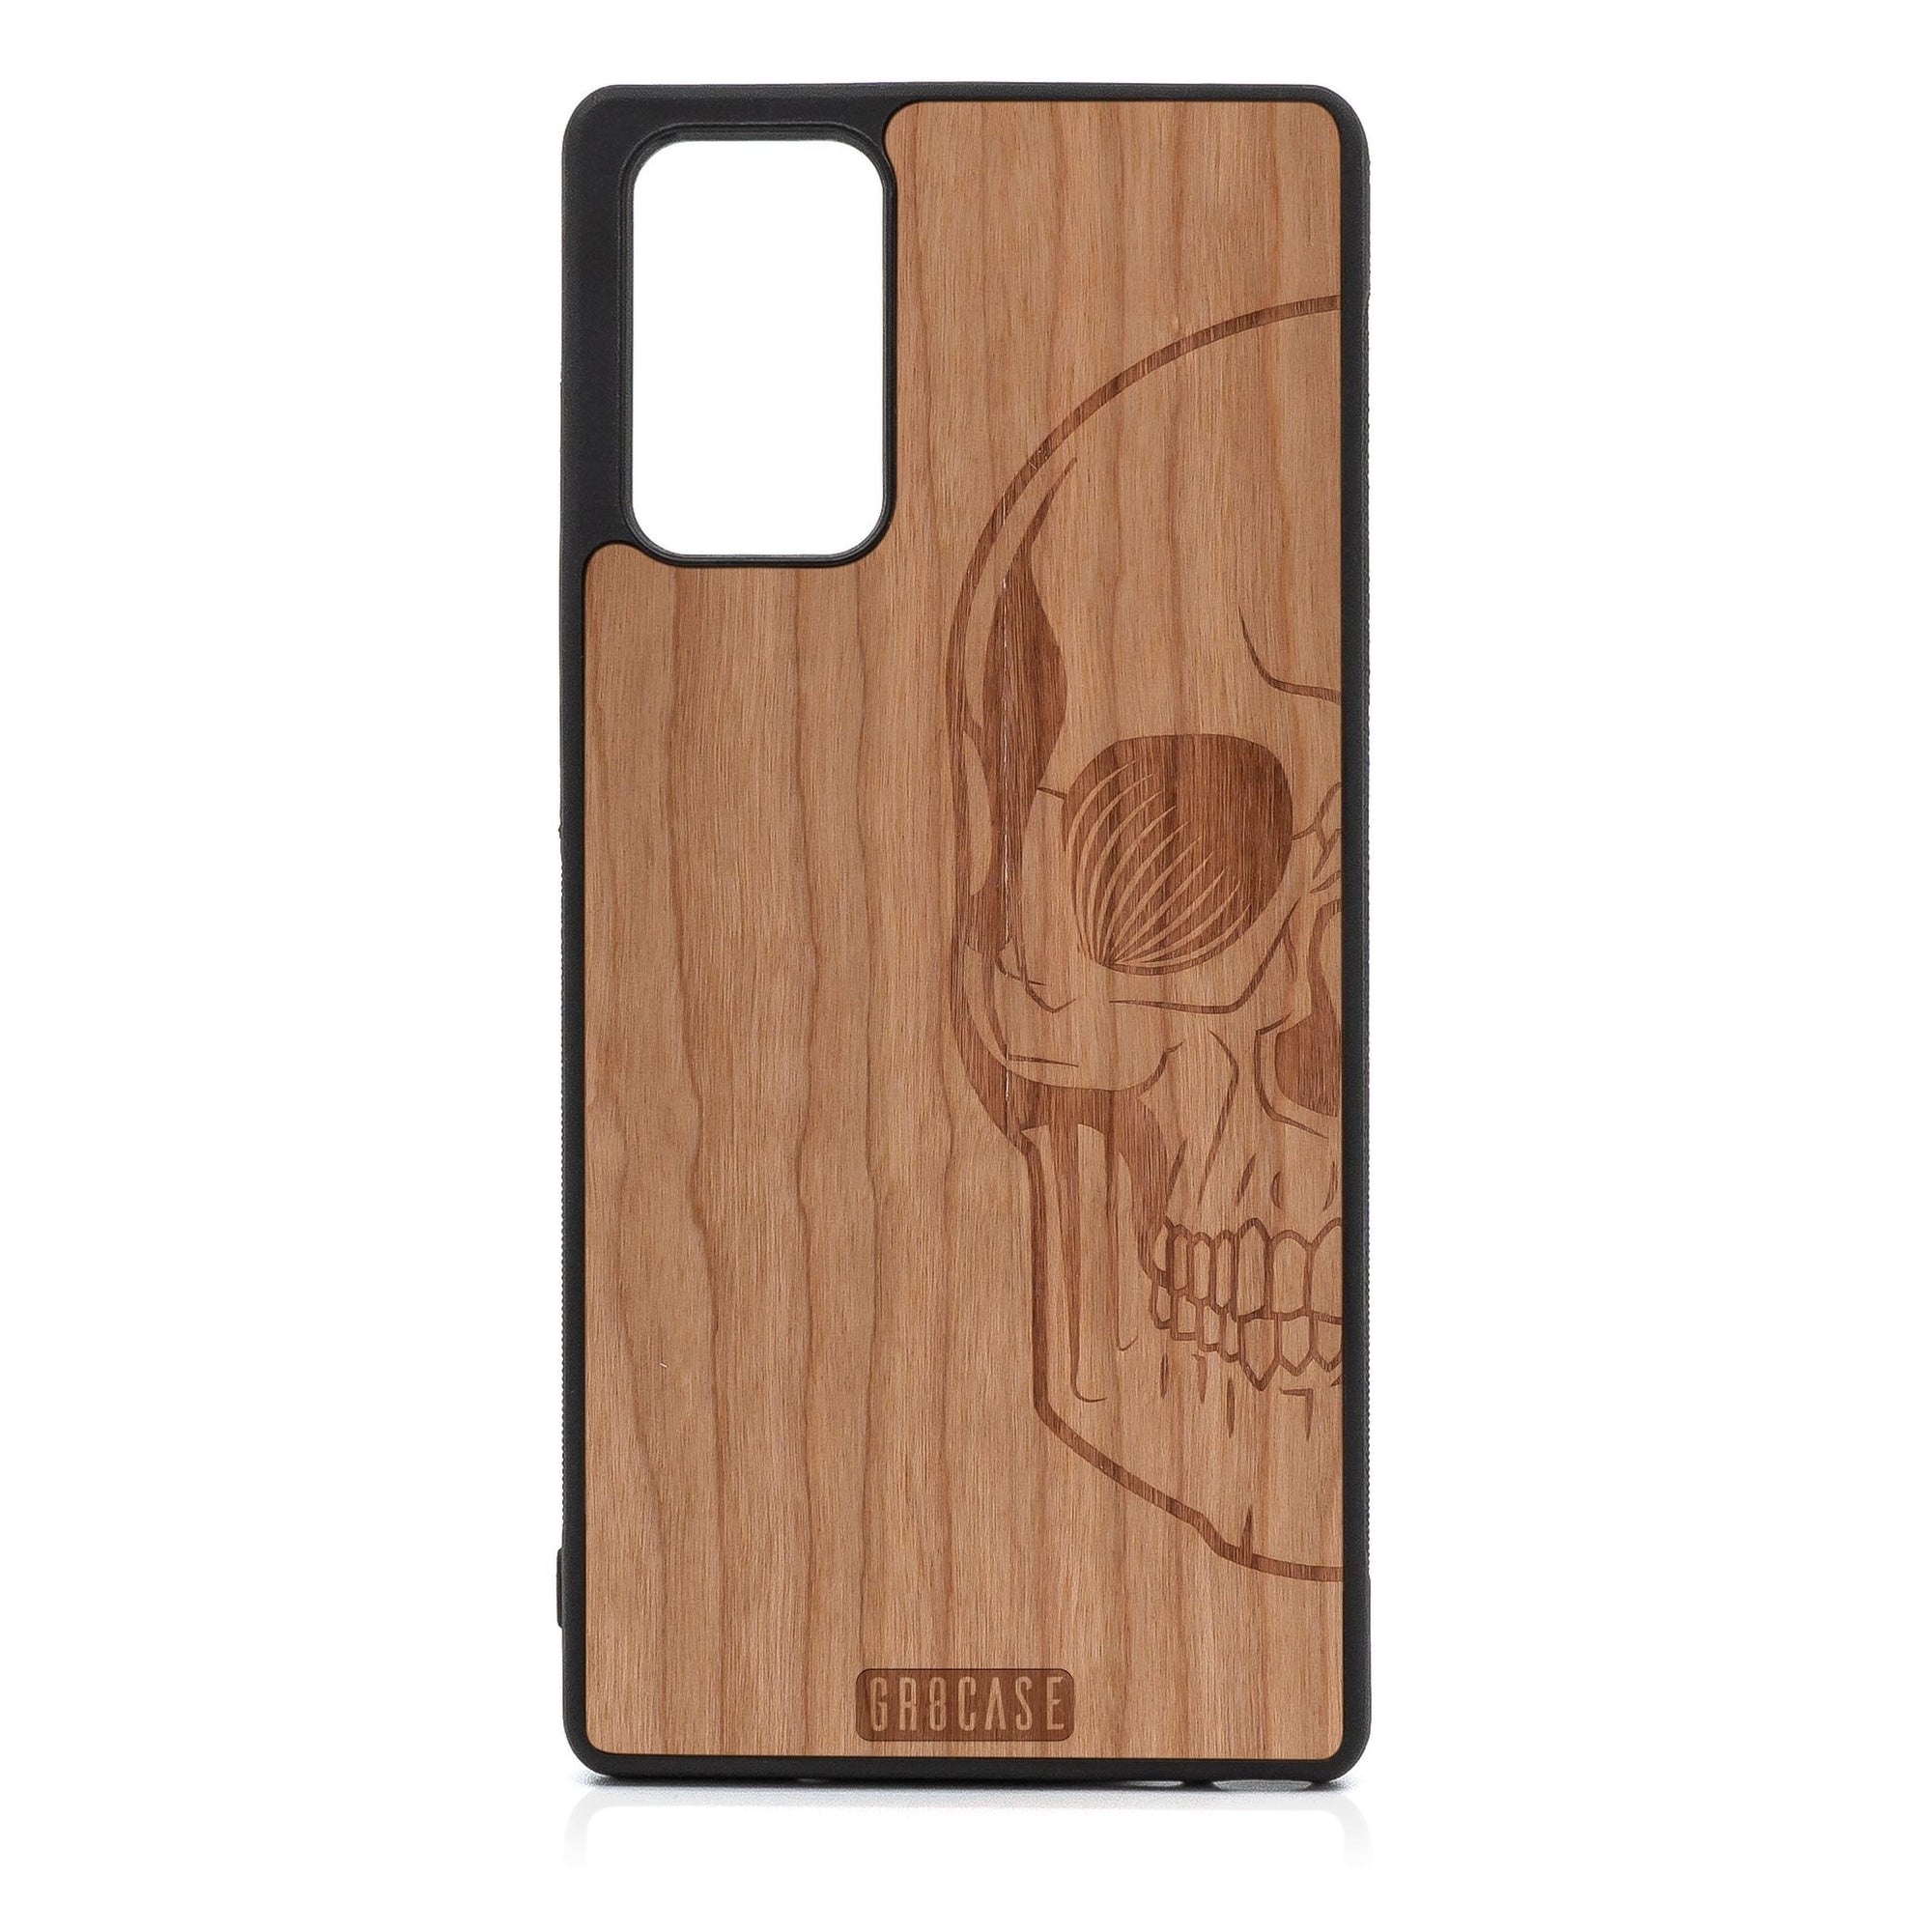 Half Skull Design Wood Case For Samsung Galaxy A52 5G